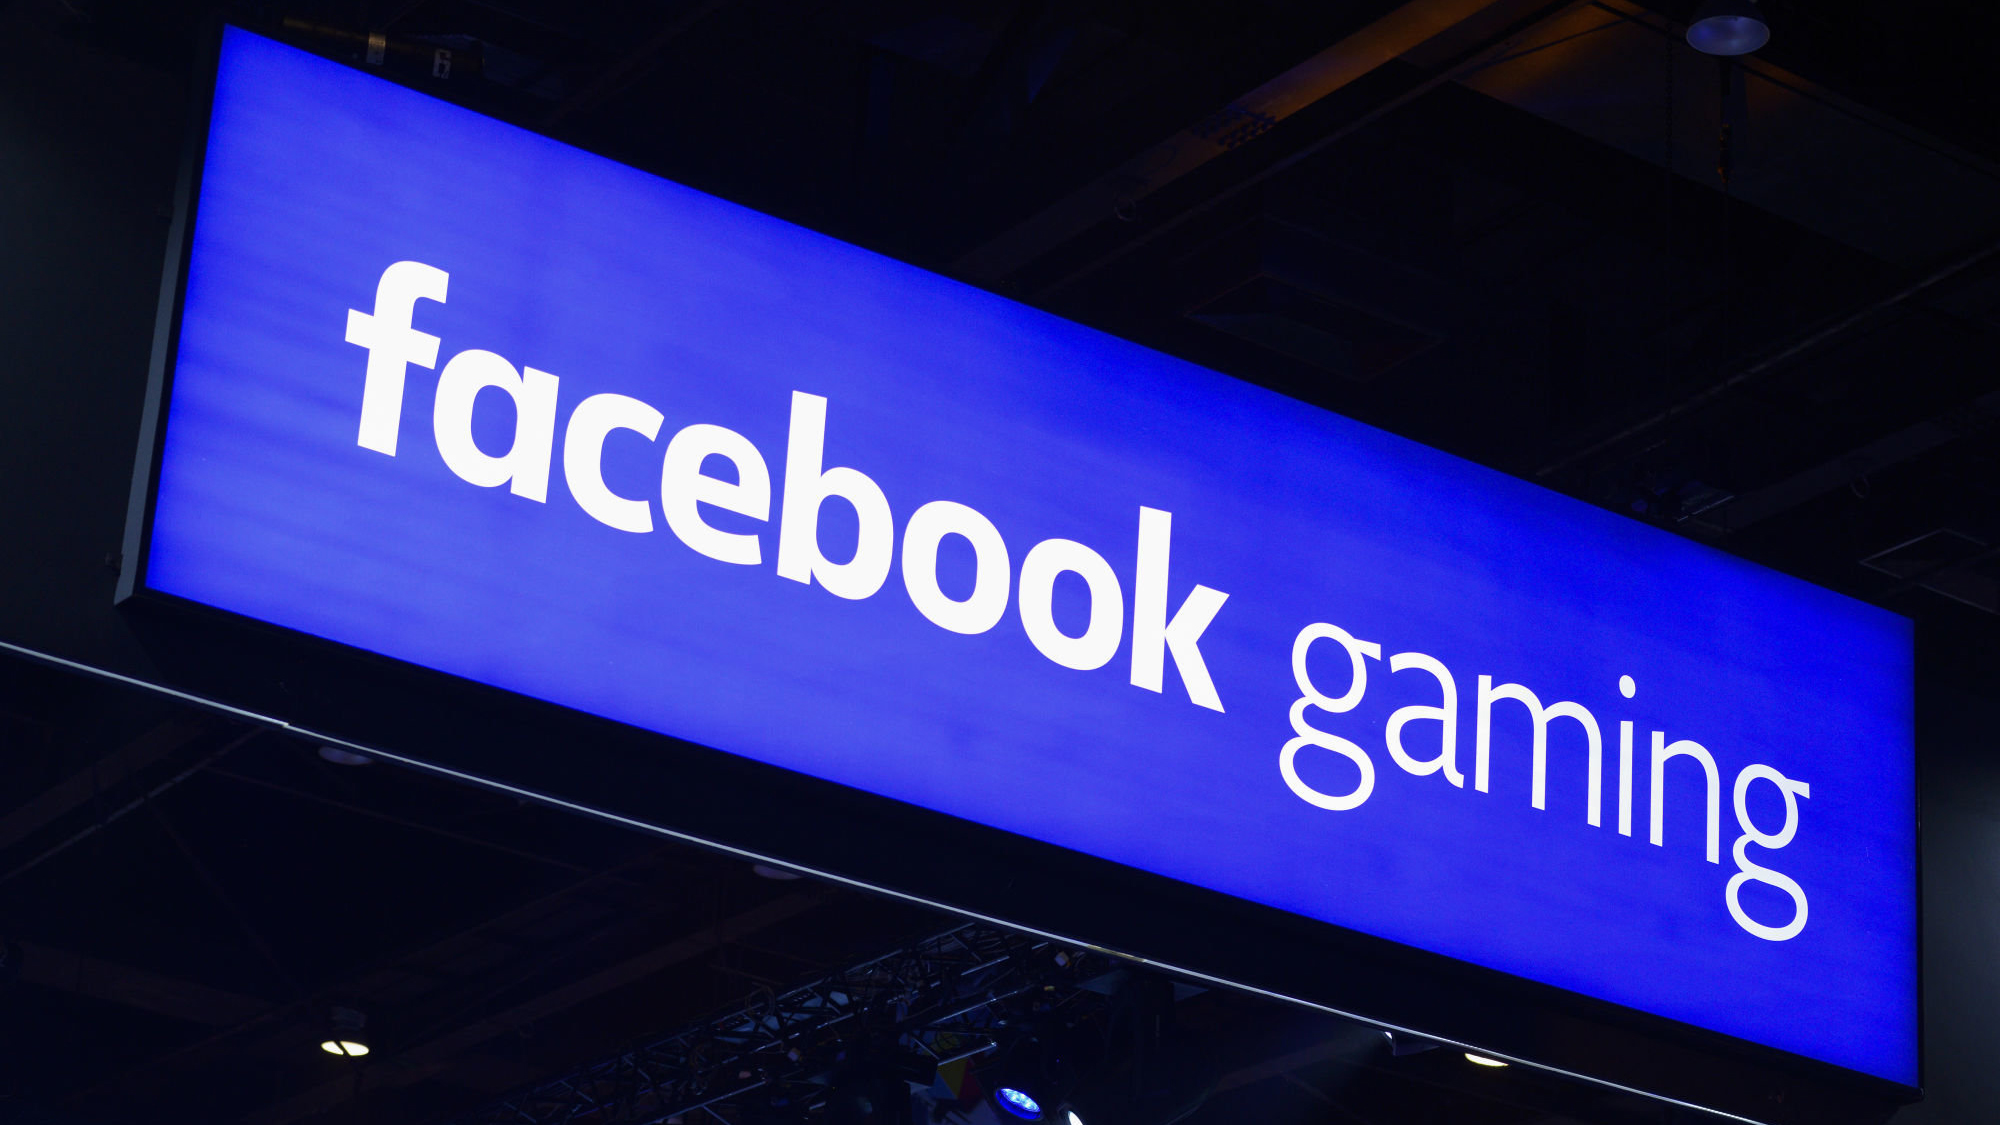 App Facebook trên Android chuẩn bị ra mắt Tab chuyên game riêng cho game thủ